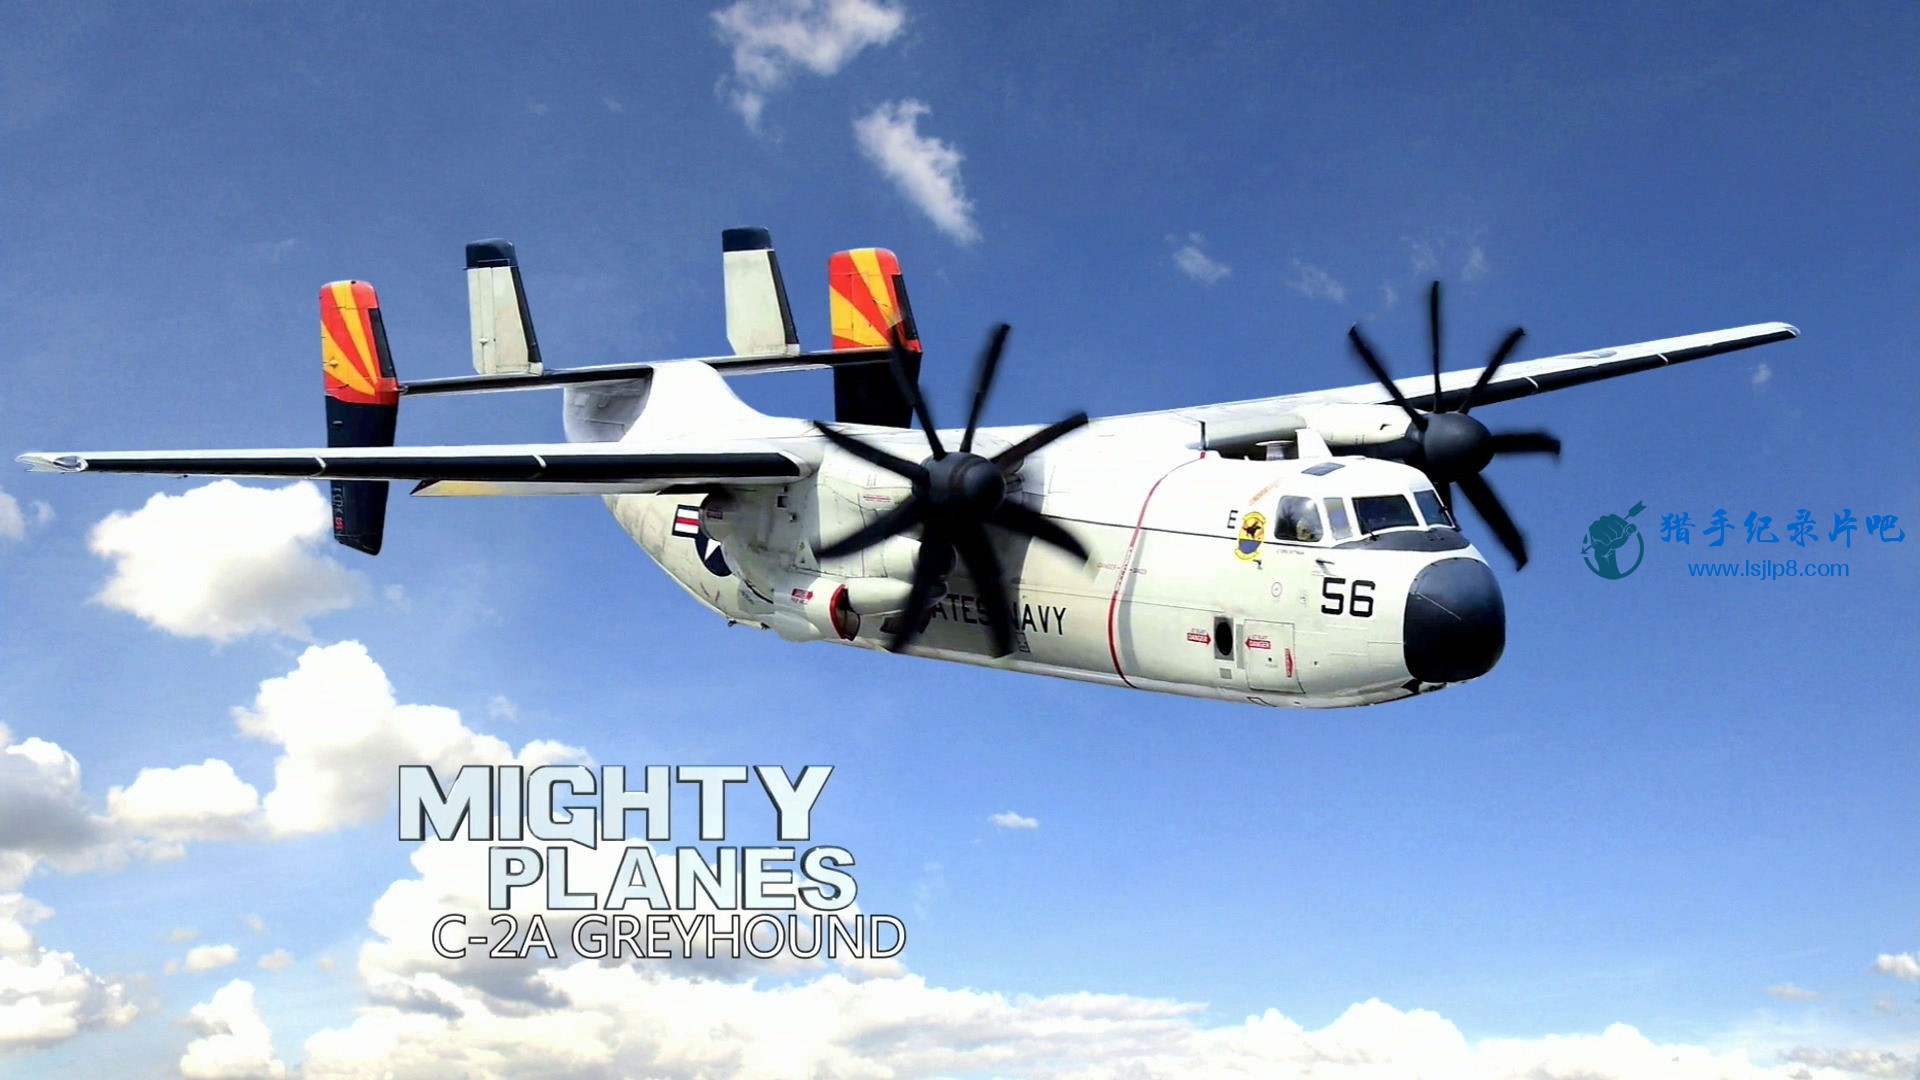 Mighty Planes S04E01 C-2A Greyhound 1080p Amazon WEB-DL DD  5.1 x264-TrollHD.mkv.jpg